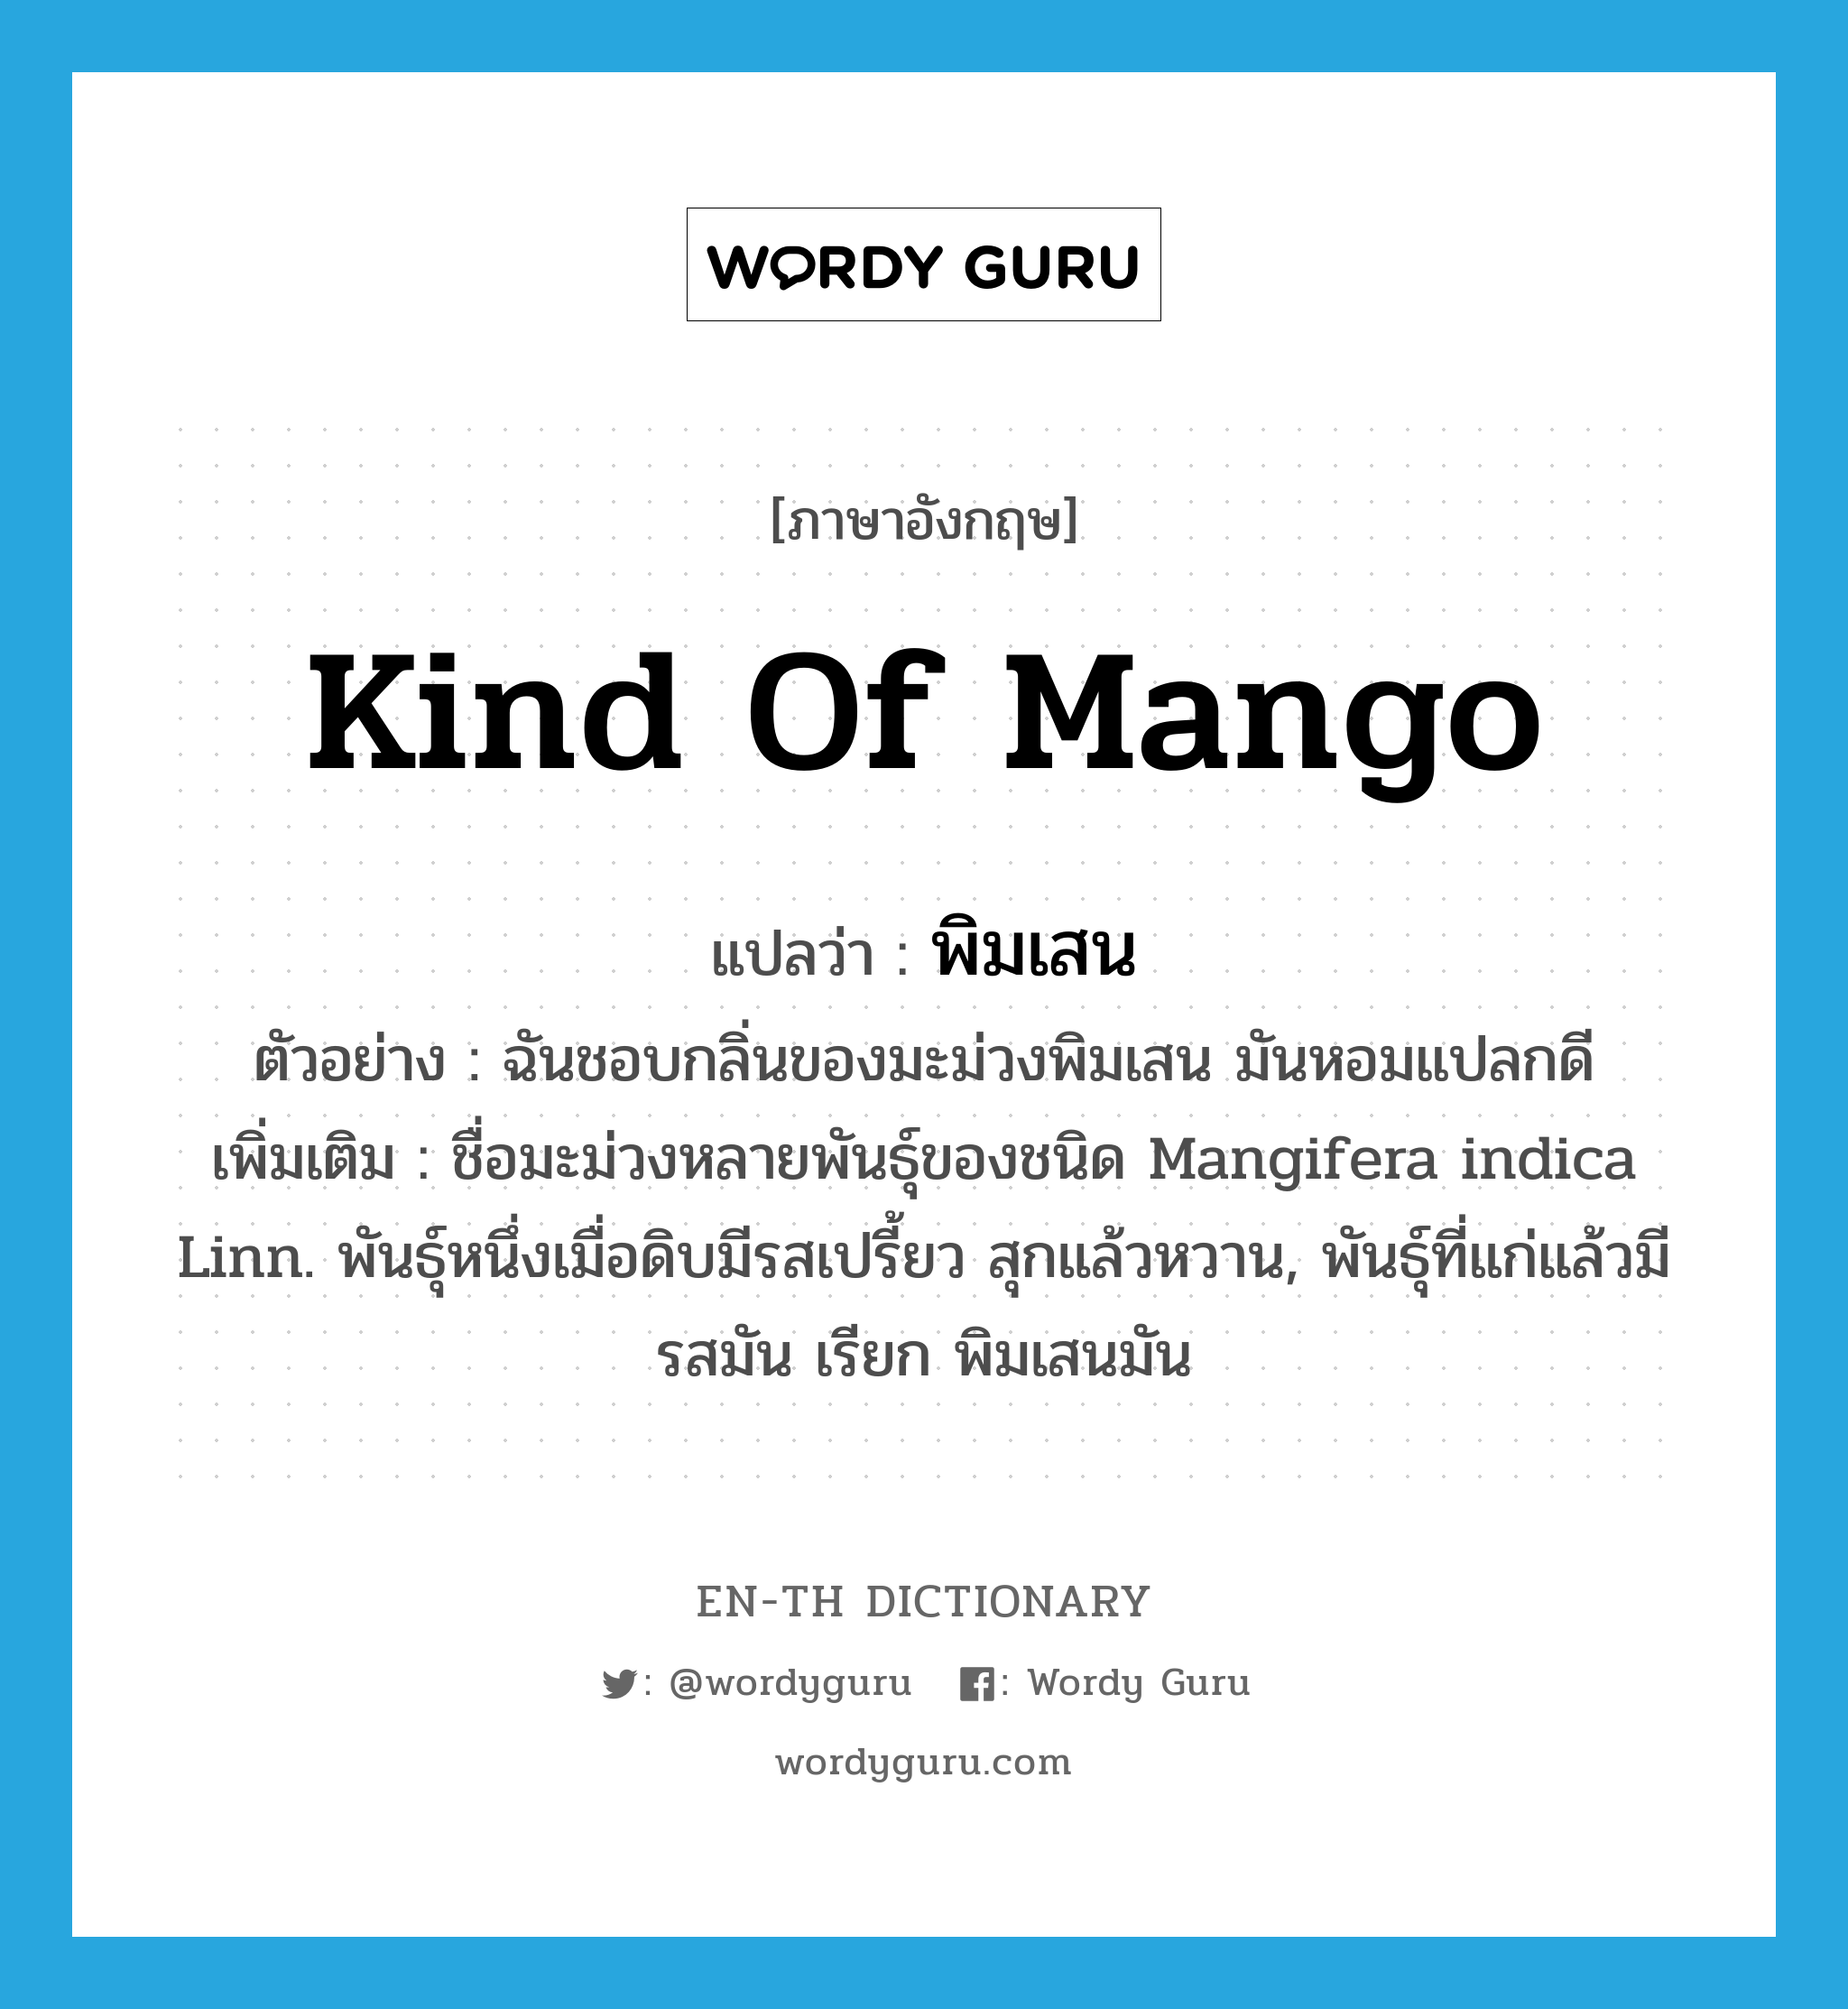 kind of mango แปลว่า?, คำศัพท์ภาษาอังกฤษ kind of mango แปลว่า พิมเสน ประเภท N ตัวอย่าง ฉันชอบกลิ่นของมะม่วงพิมเสน มันหอมแปลกดี เพิ่มเติม ชื่อมะม่วงหลายพันธุ์ของชนิด Mangifera indica Linn. พันธุ์หนึ่งเมื่อดิบมีรสเปรี้ยว สุกแล้วหวาน, พันธุ์ที่แก่แล้วมีรสมัน เรียก พิมเสนมัน หมวด N